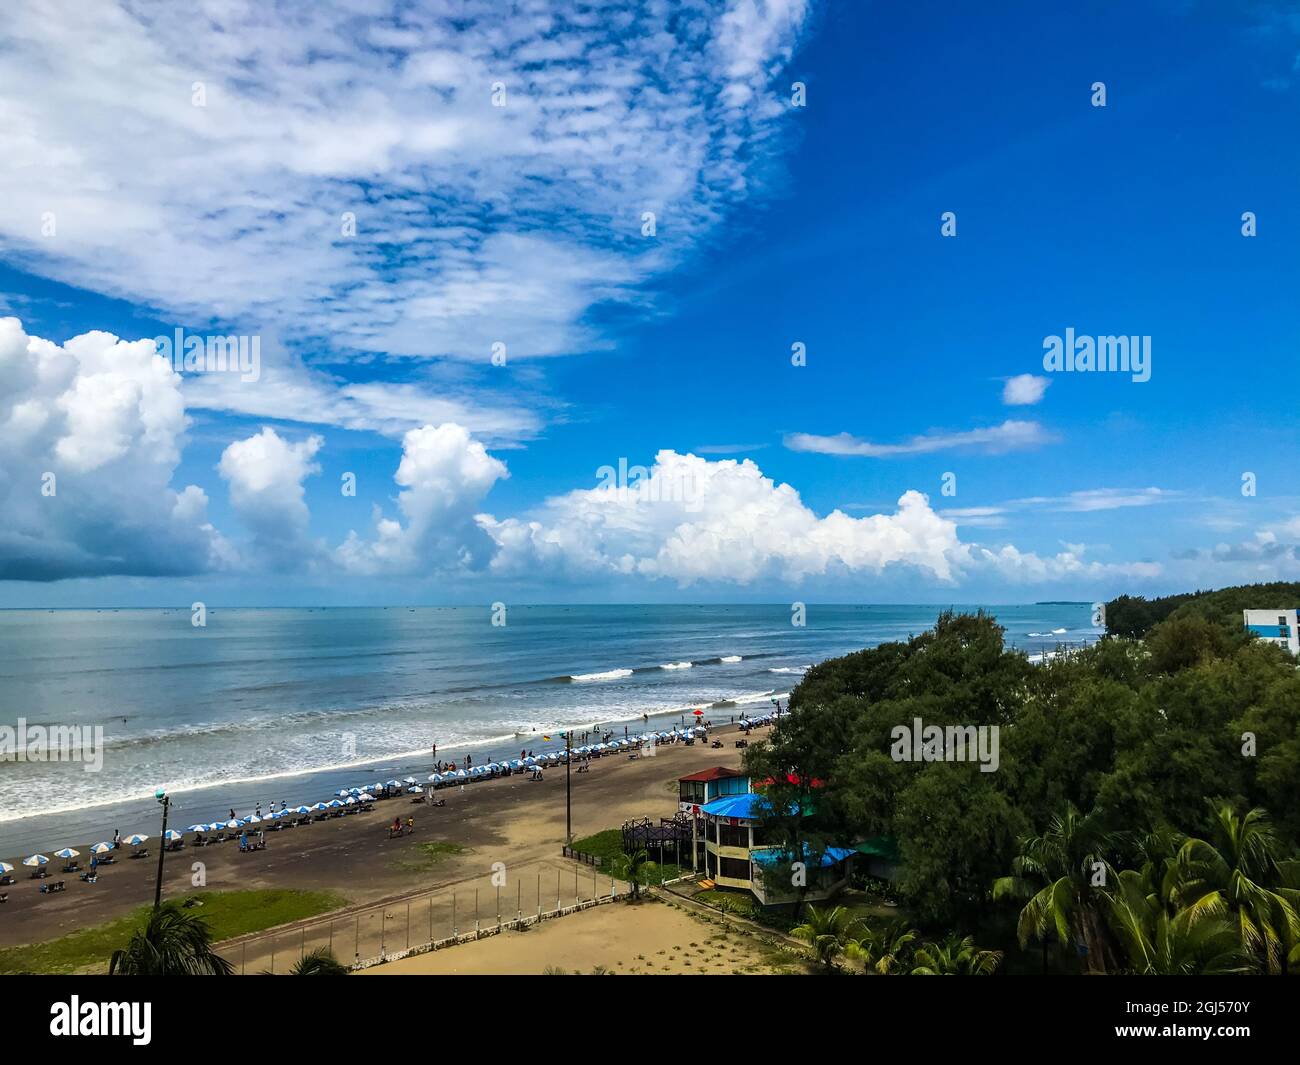 landscape of cox's bazar sea beach . Stock Photo